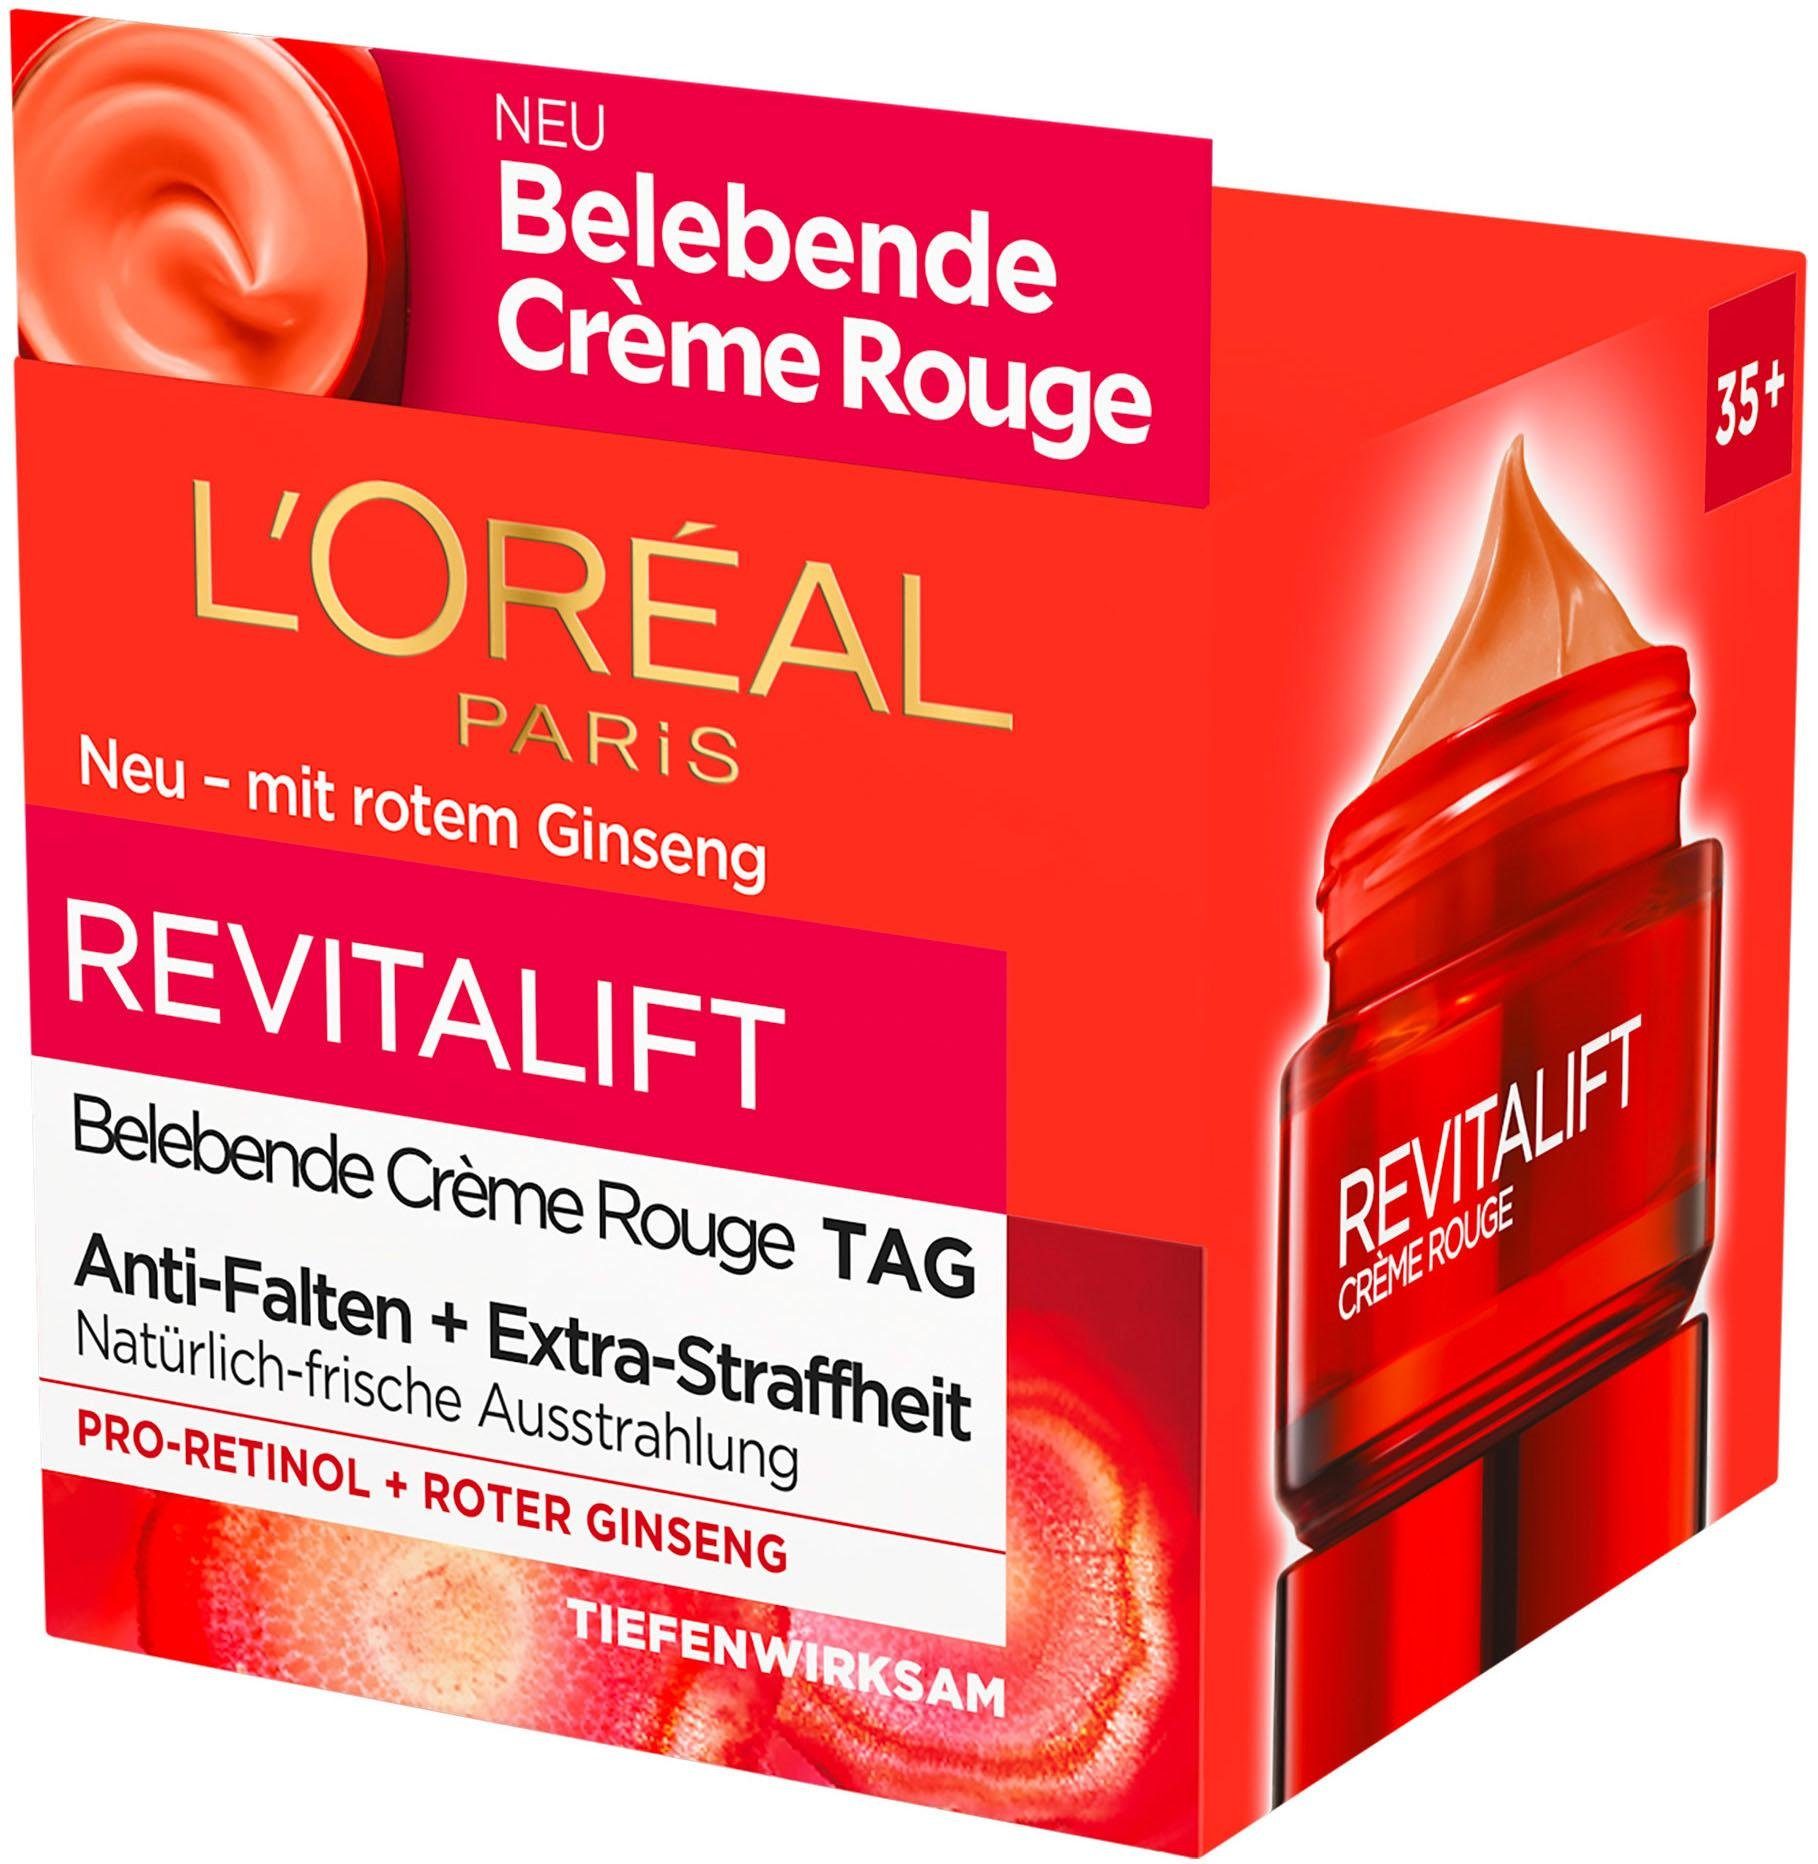 Tagescreme Revitalift Crème Belebende Rouge L'ORÉAL PARIS